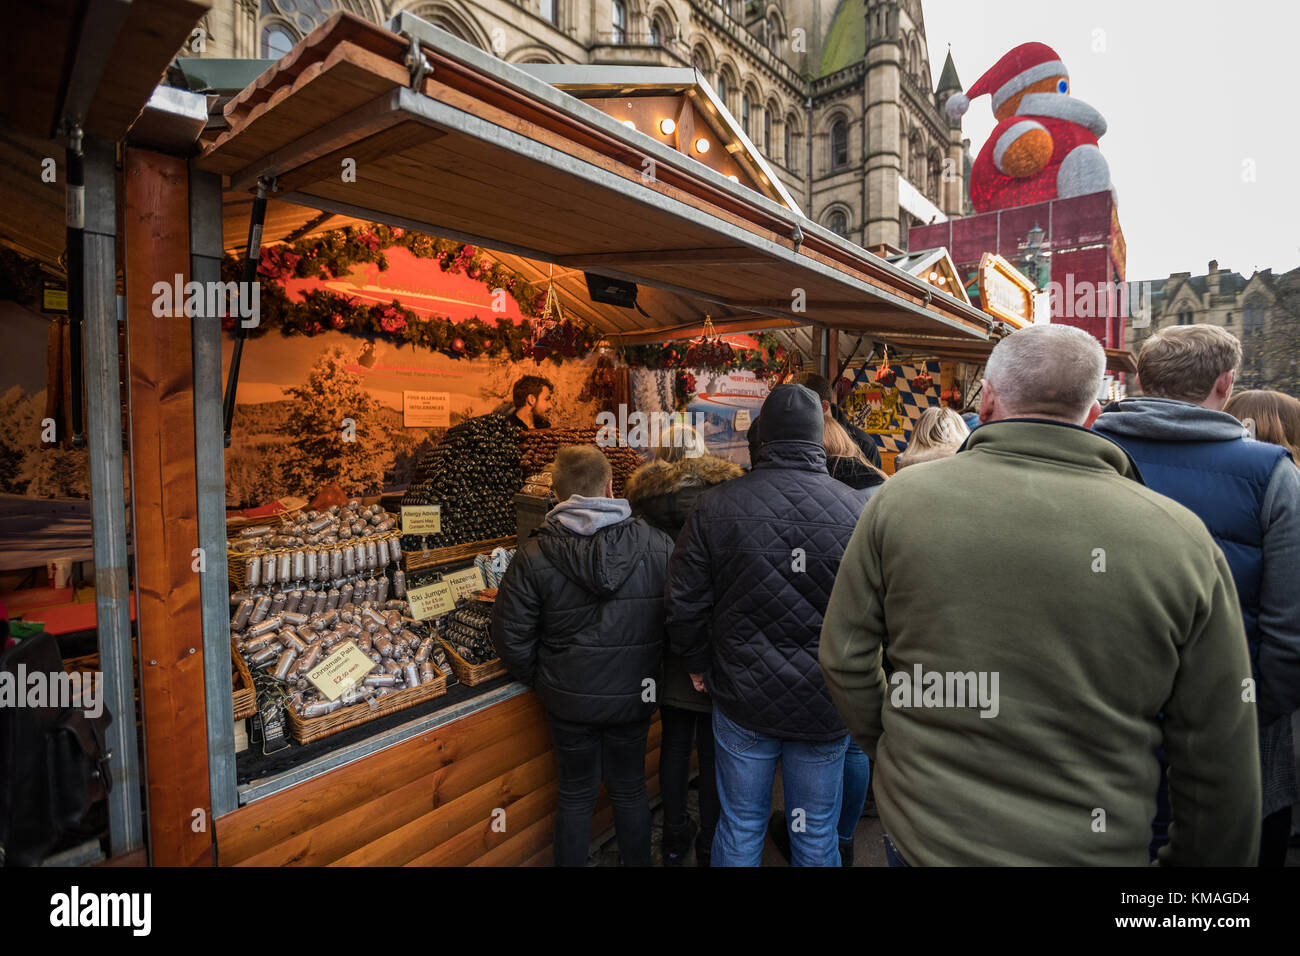 Puesto en el mercado los trabajadores sirviendo comida a los clientes en los mercados de Navidad de Manchester alrededor de la ciudad, Manchester, Inglaterra, Reino Unido. Foto de stock